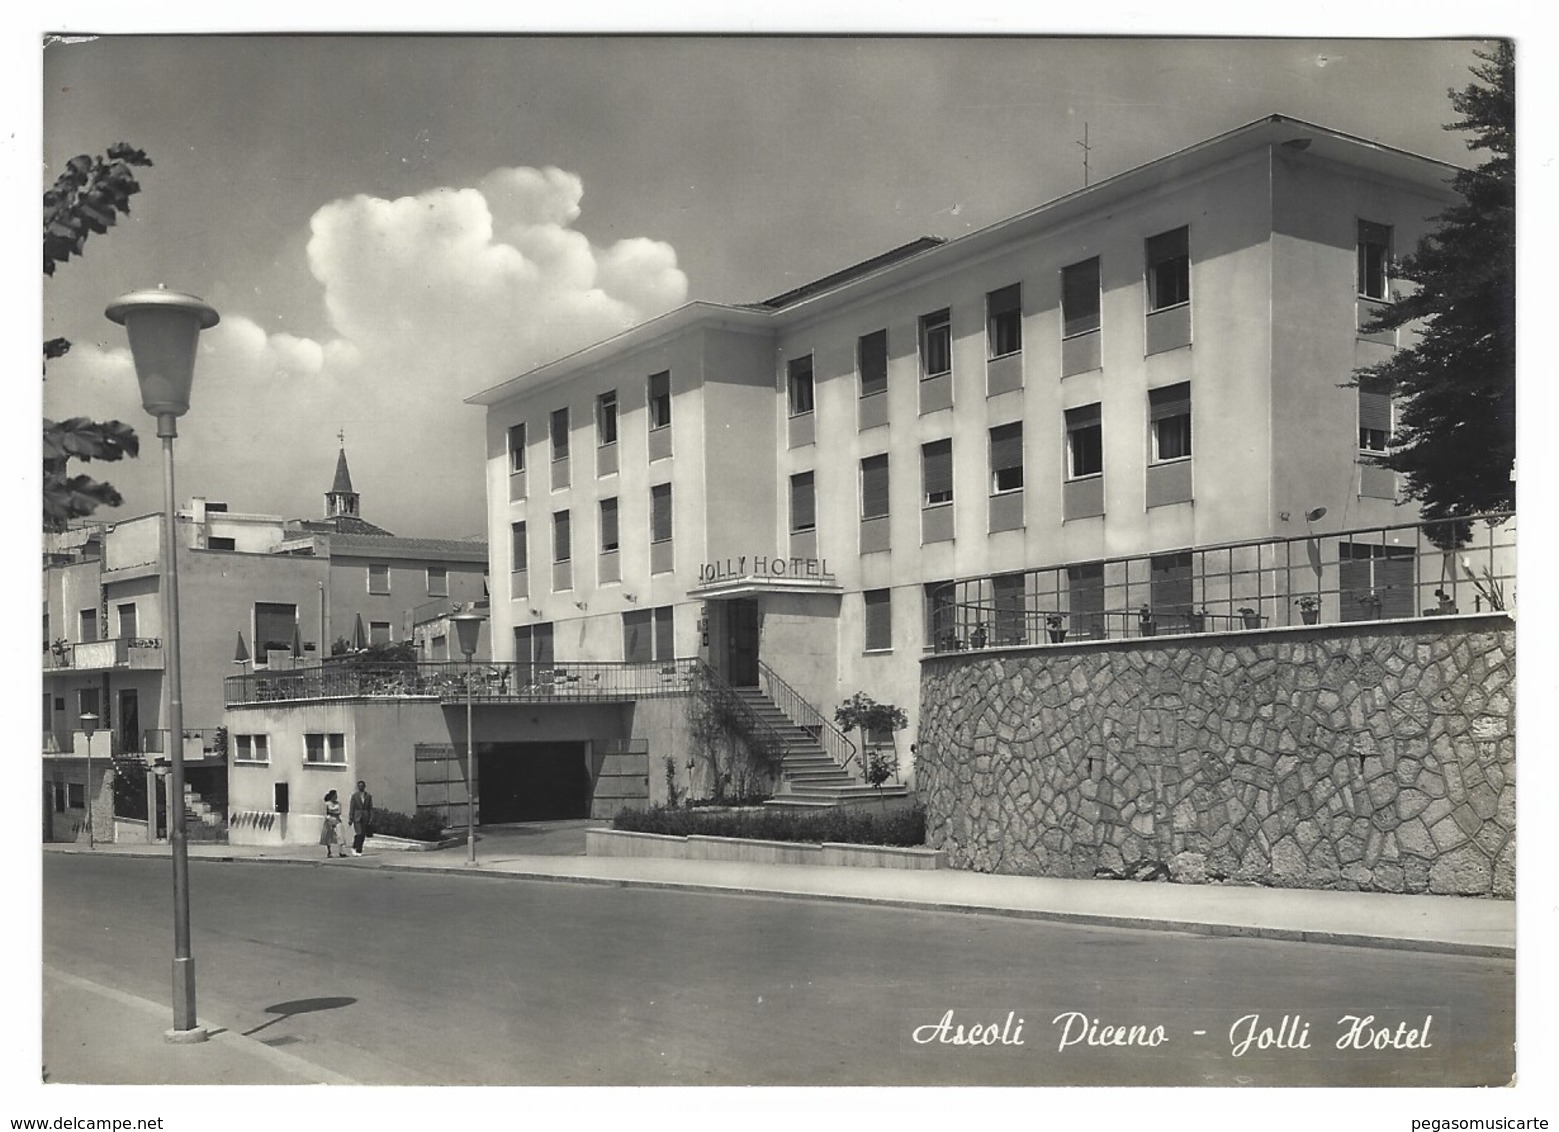 2524 - ASCOLI PICENO JOLLI HOTEL 1955 - Ascoli Piceno